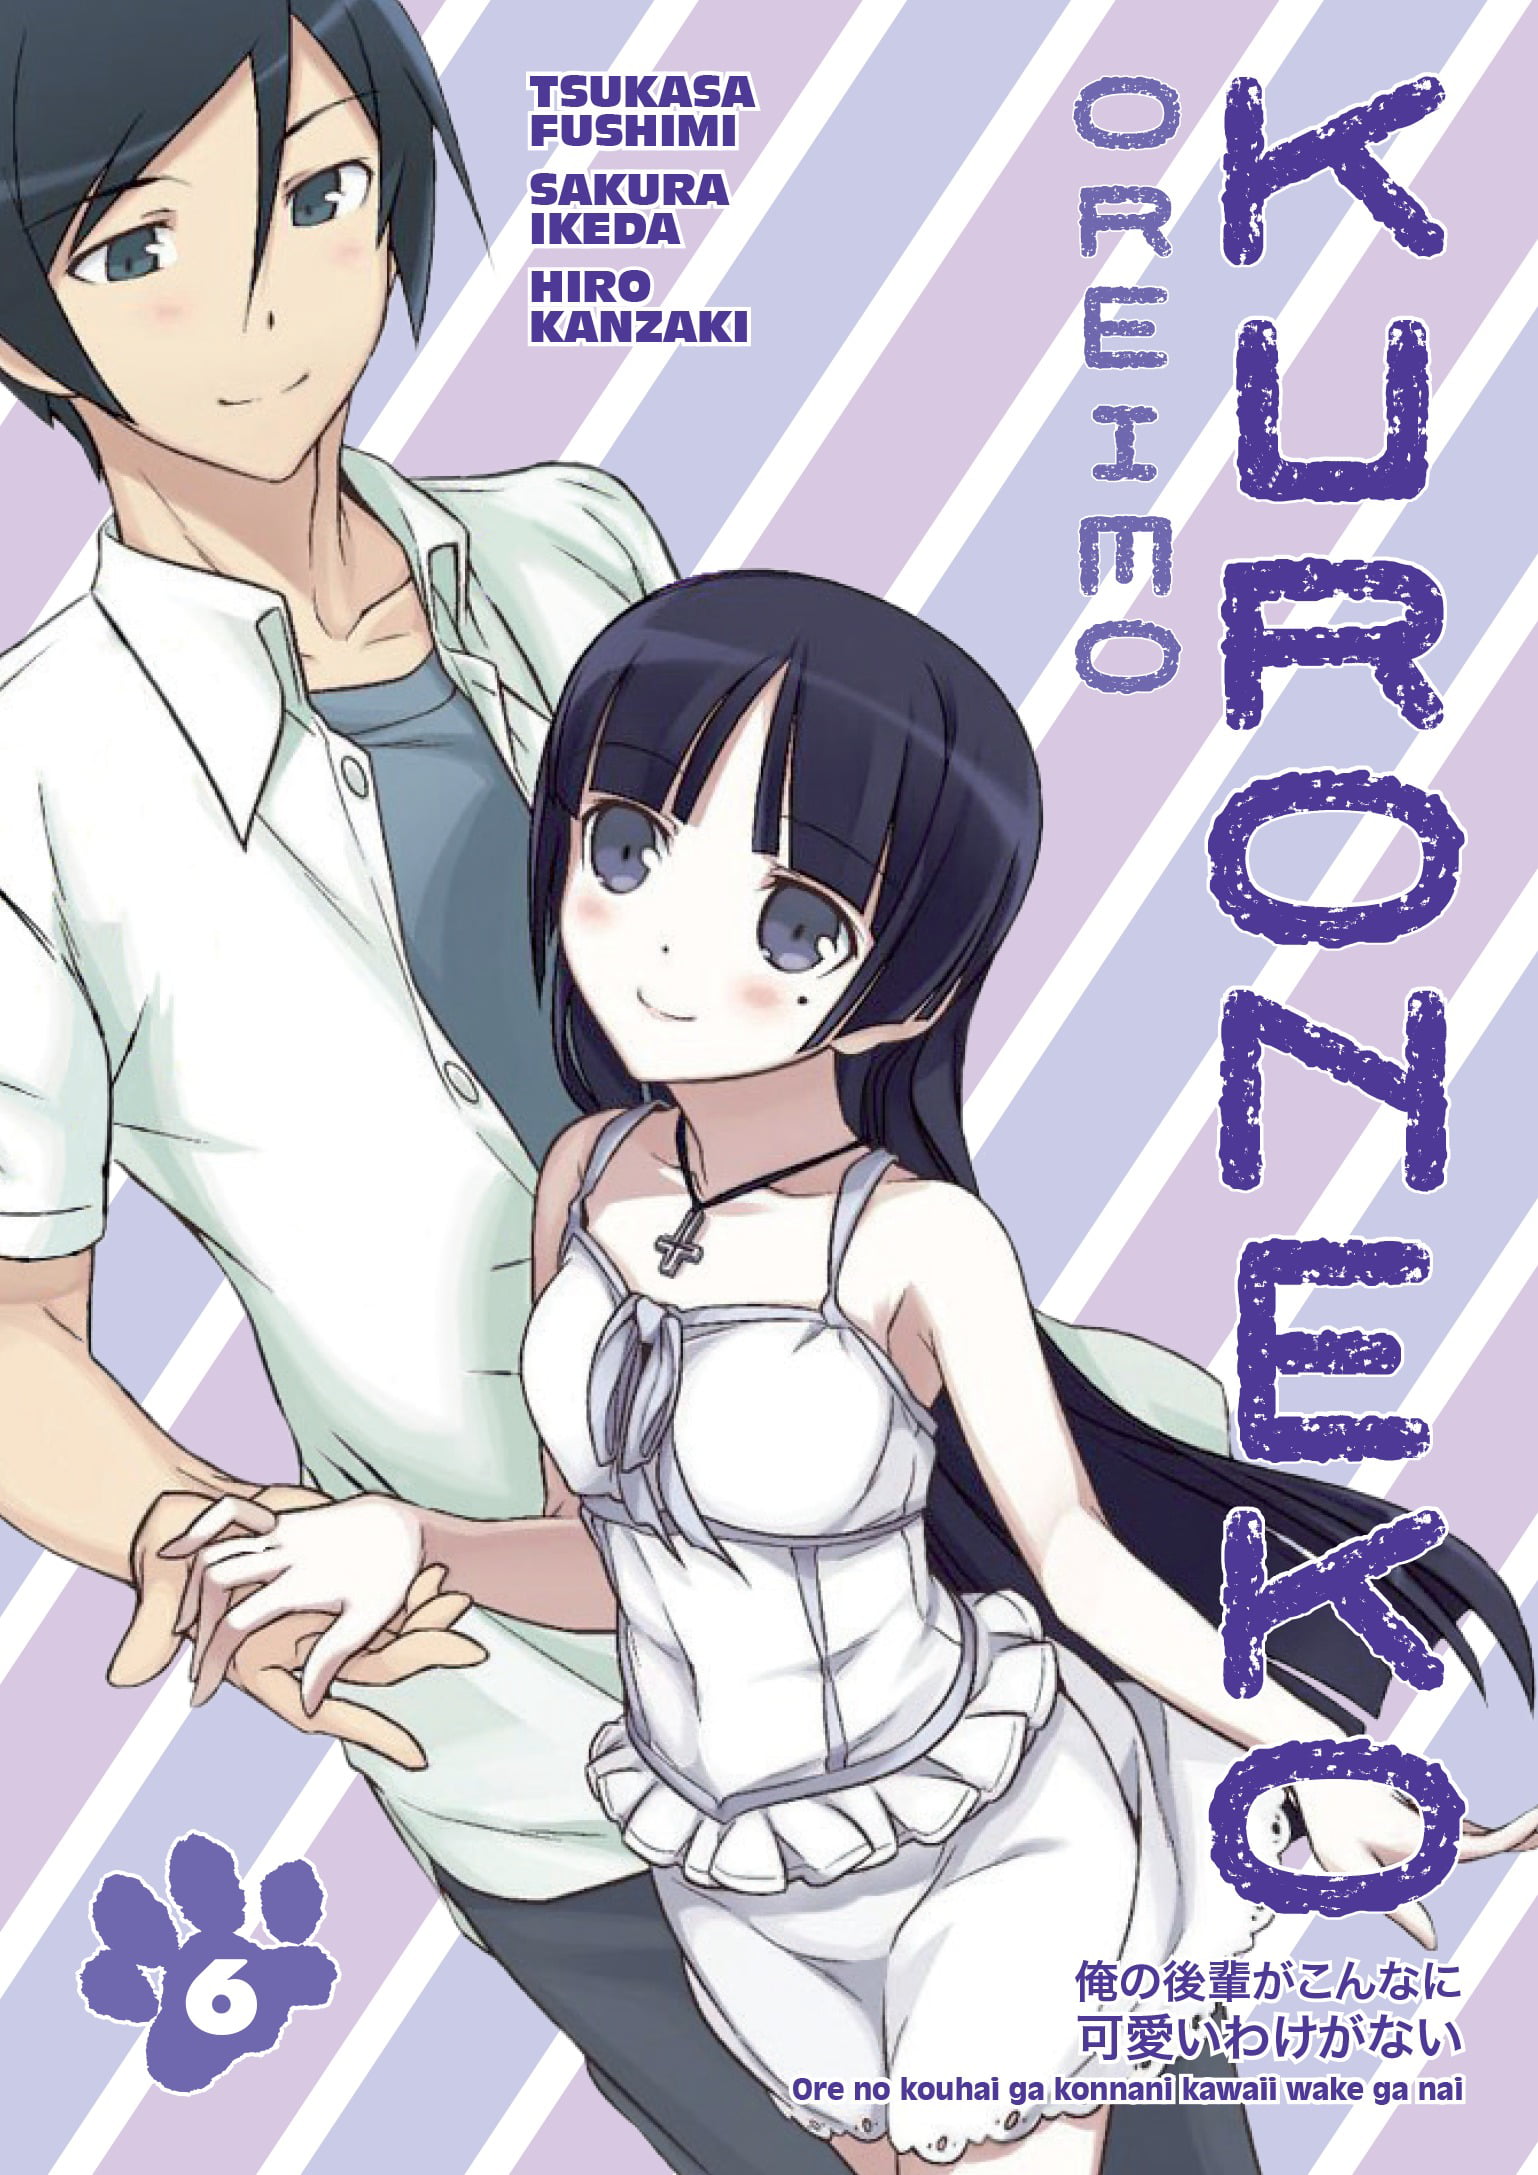 Light Novel Volume 6  Anime, Anime images, Romantic anime